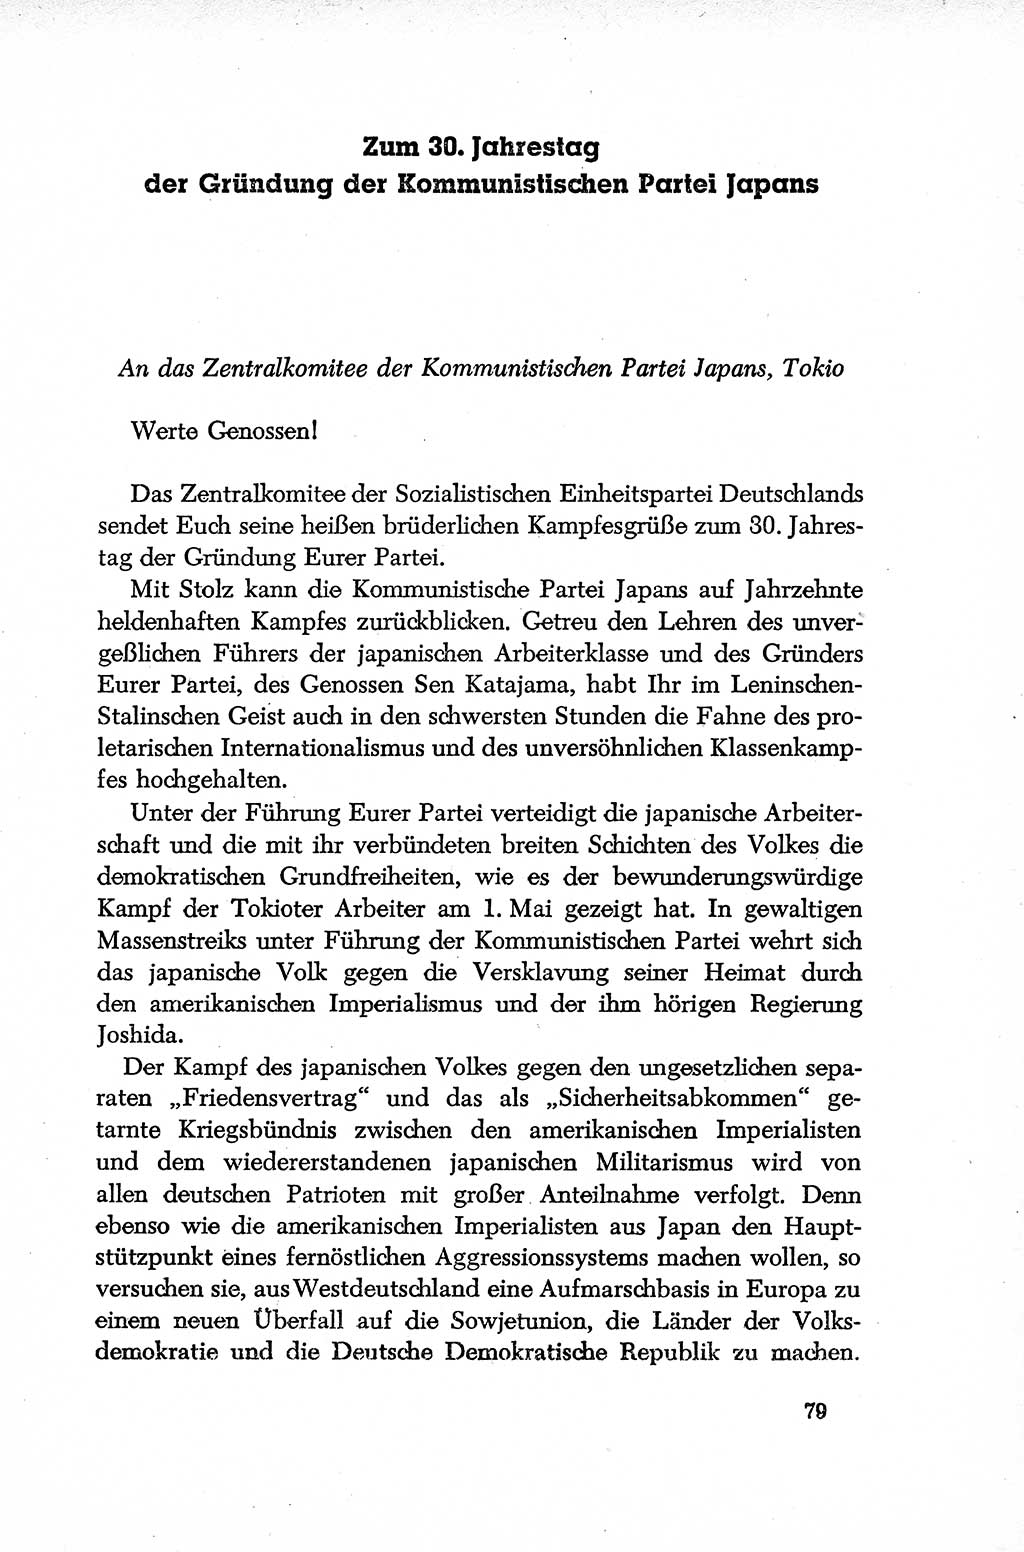 Dokumente der Sozialistischen Einheitspartei Deutschlands (SED) [Deutsche Demokratische Republik (DDR)] 1952-1953, Seite 79 (Dok. SED DDR 1952-1953, S. 79)